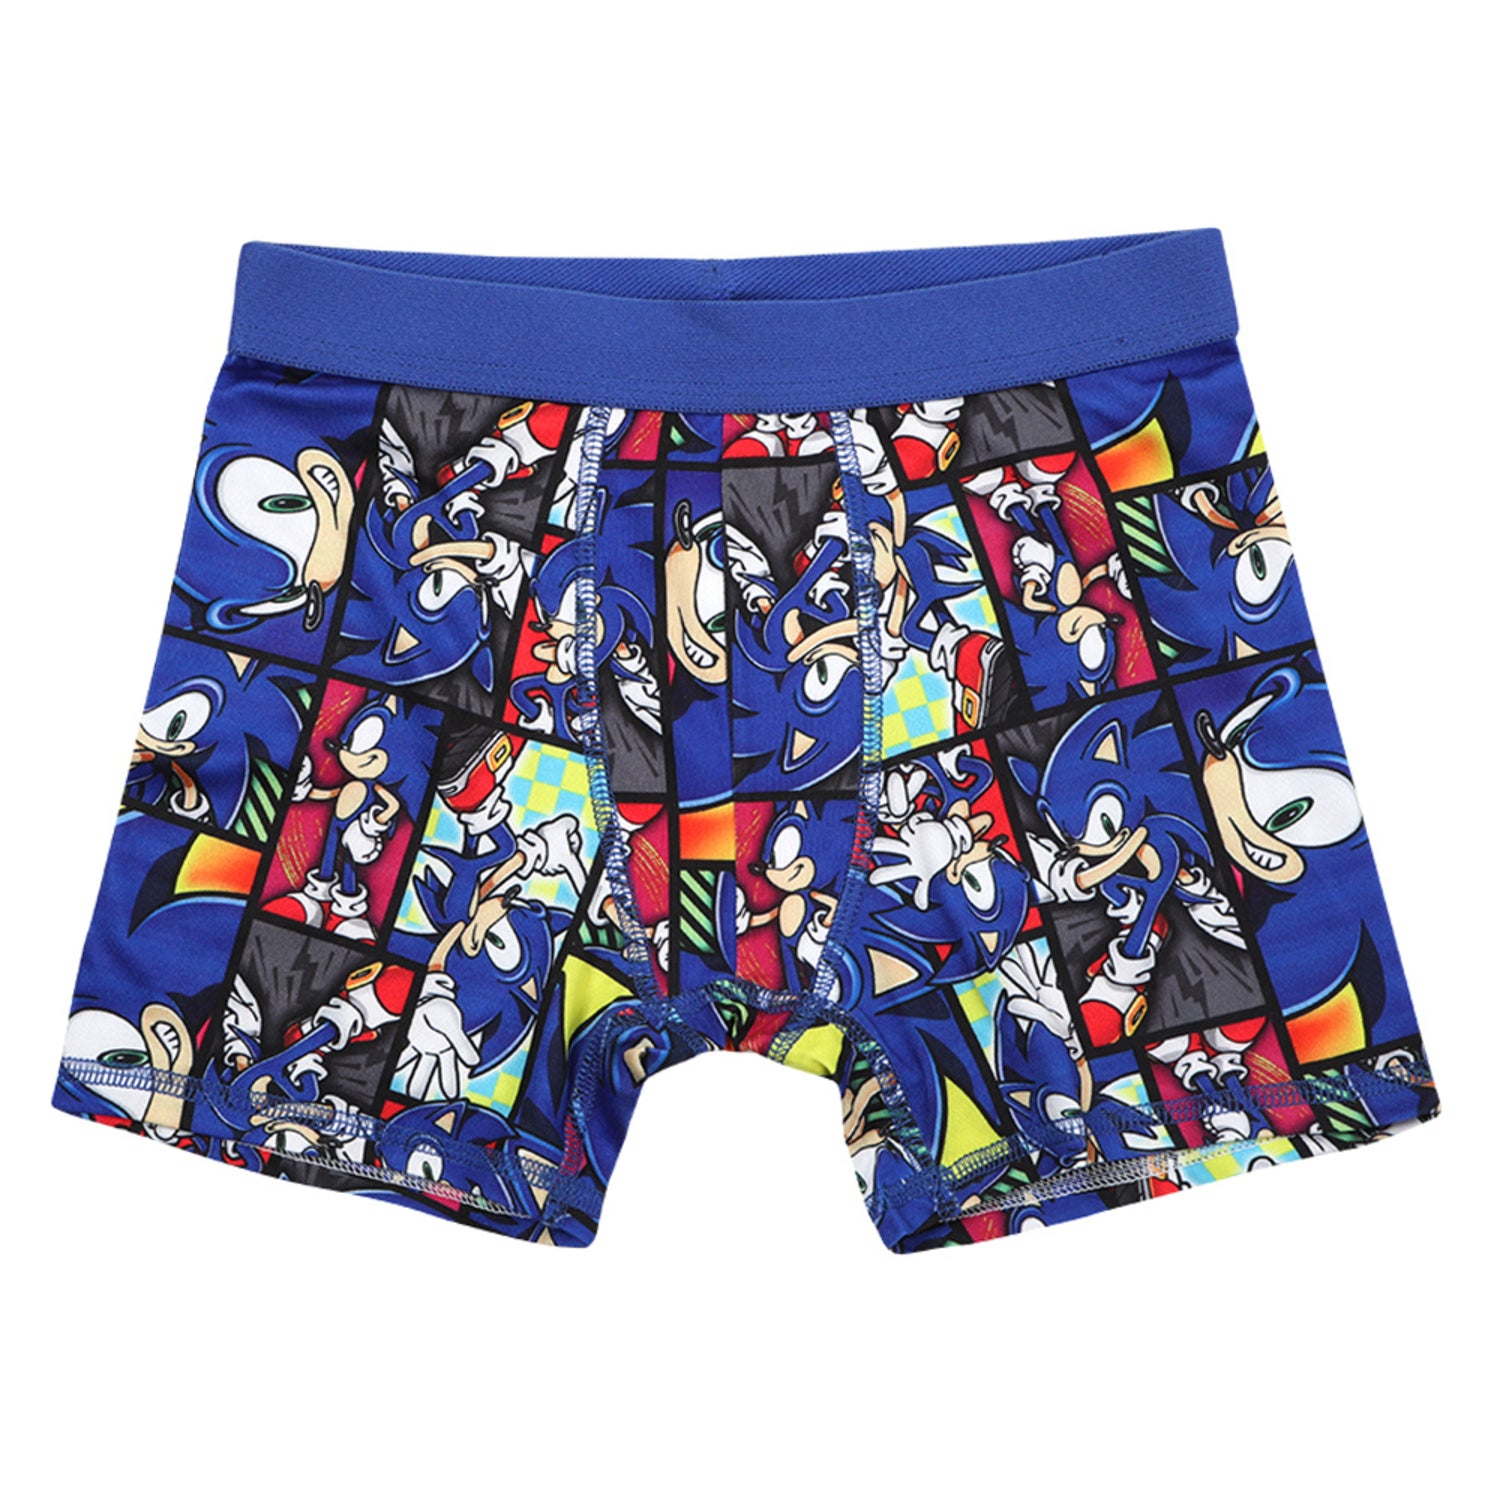 Sonic the Hedgehog, Boys Underwear, 5 Pack Briefs Sizes 4-8